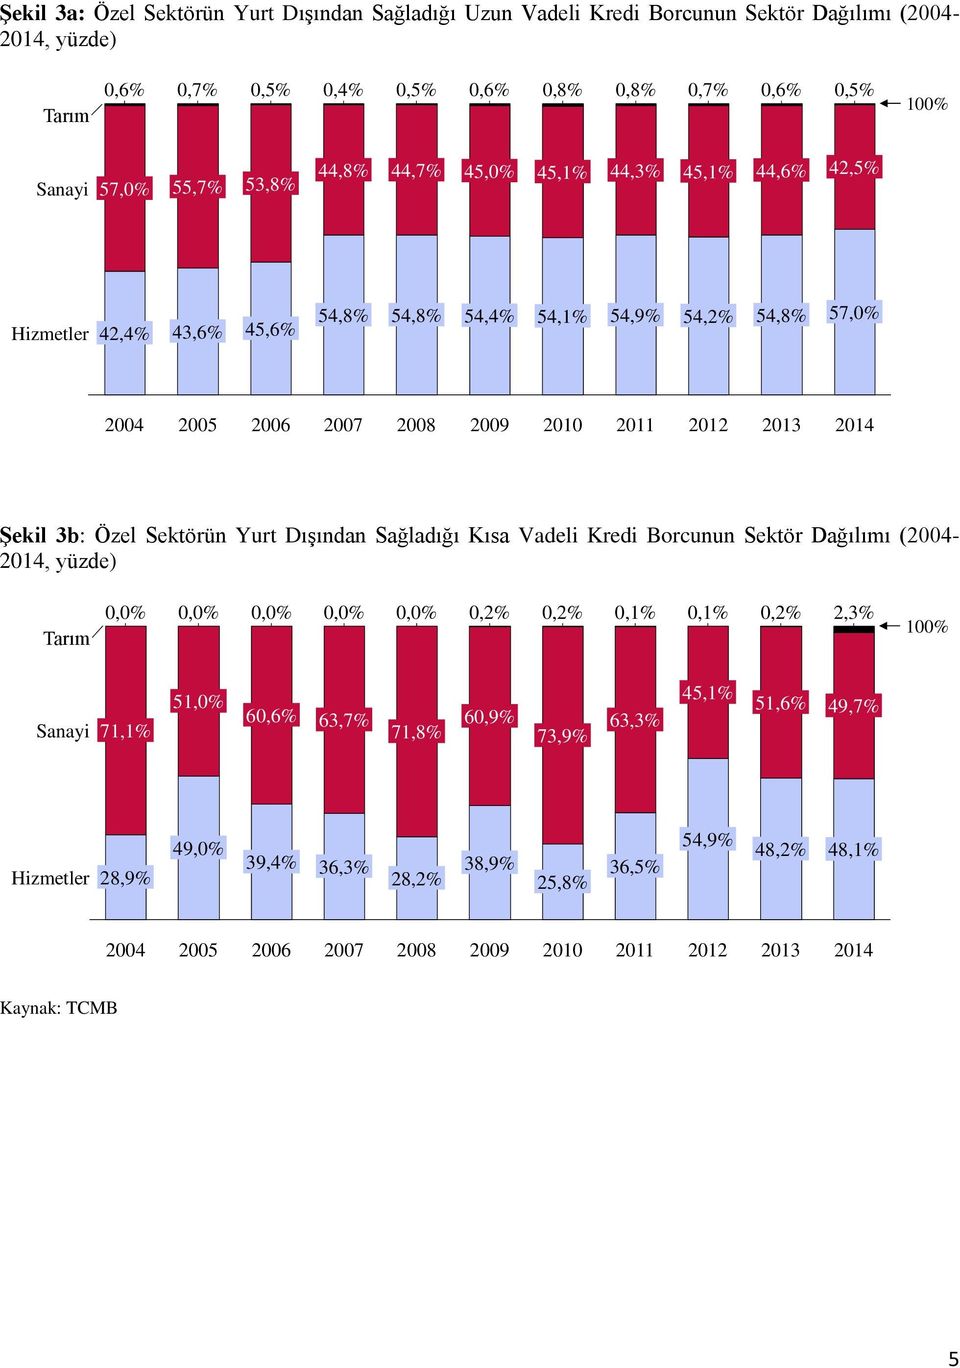 2012 2013 2014 Şekil 3b: Özel Sektörün Yurt Dışından Sağladığı Kısa Vadeli Kredi Borcunun Sektör Dağılımı (2004-2014, yüzde) Tarım 0,2% 0,2% 0,1% 0,1% 0,2% 2,3% 100% Sanayi 71,1%